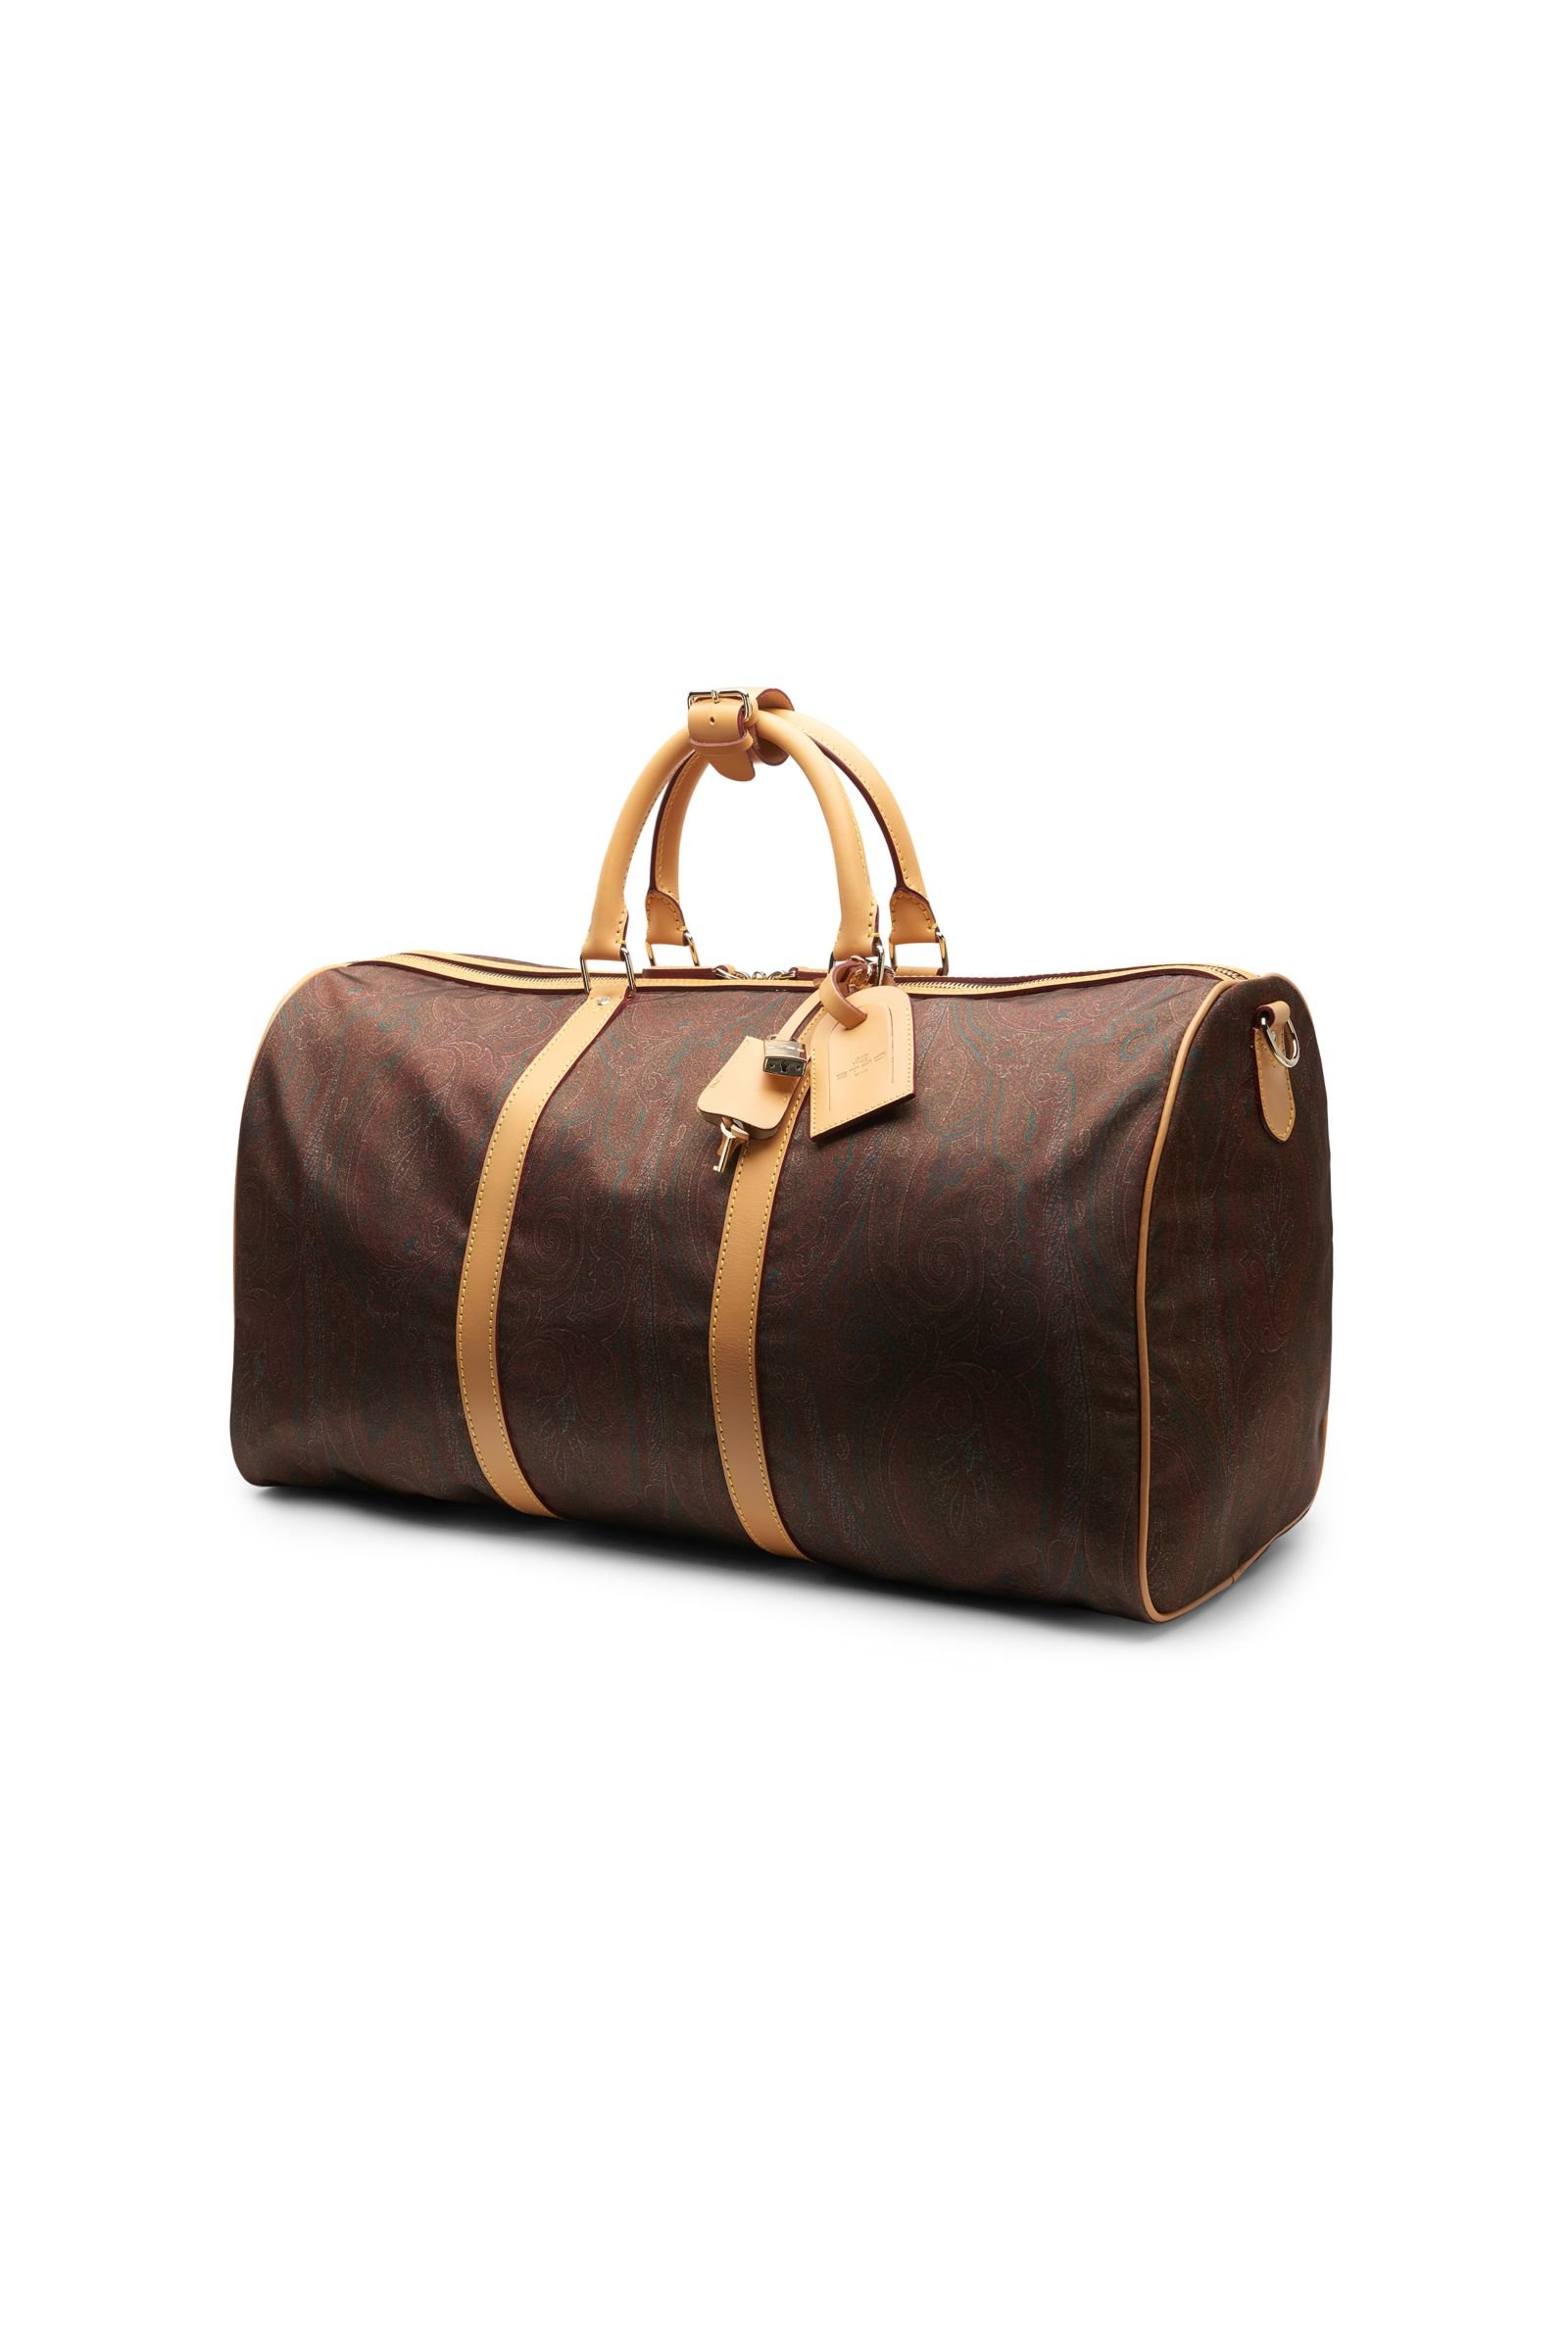 Travel bag brown patterned